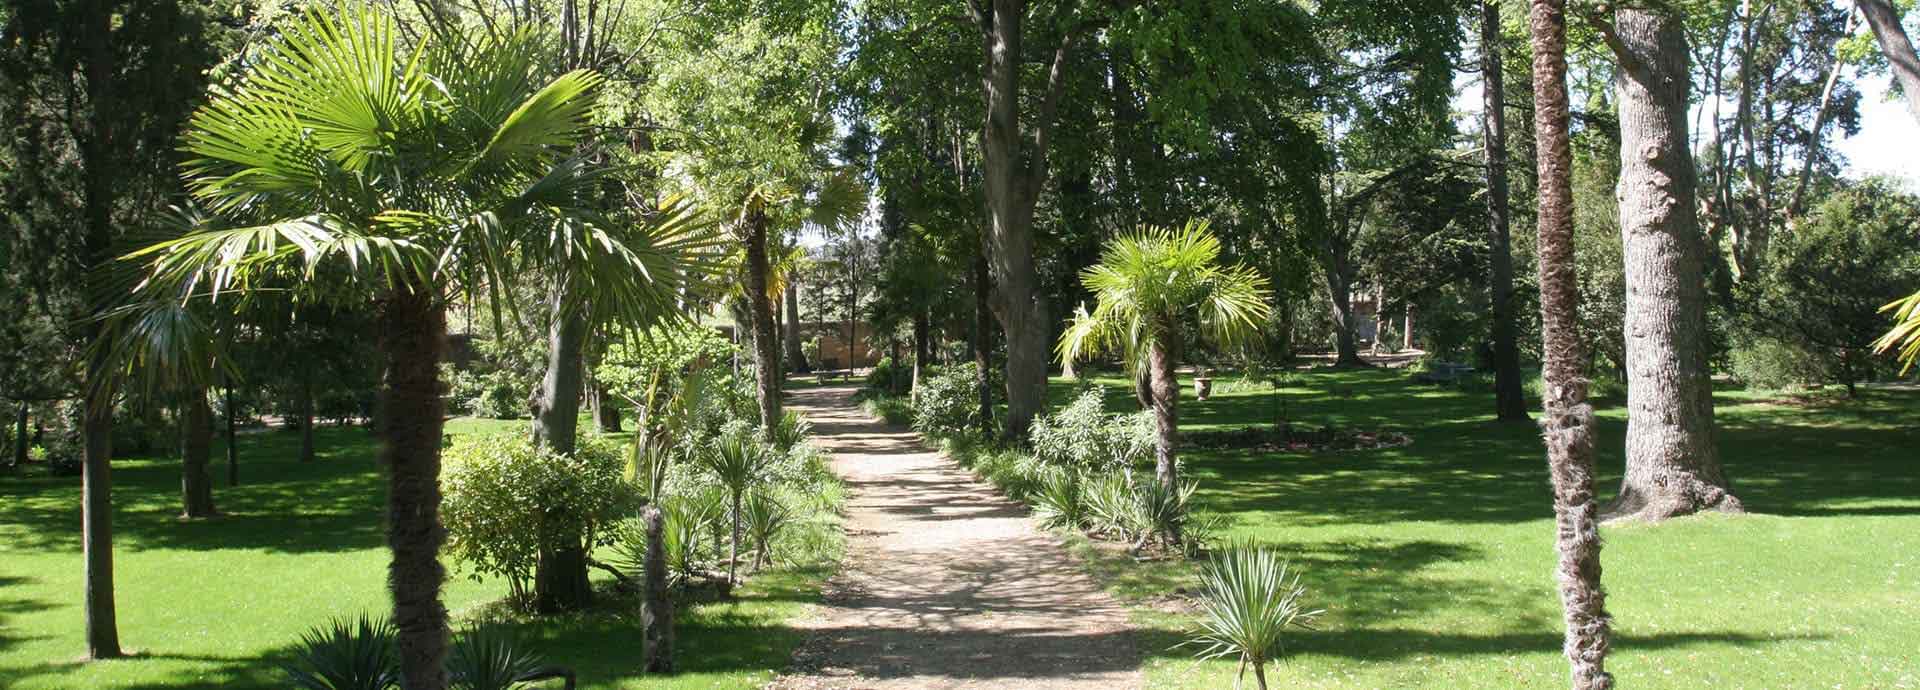 El jardín de la Finca de la Vernède, alquiler de casas de rurales entre Béziers y Narbona (Narbonne)